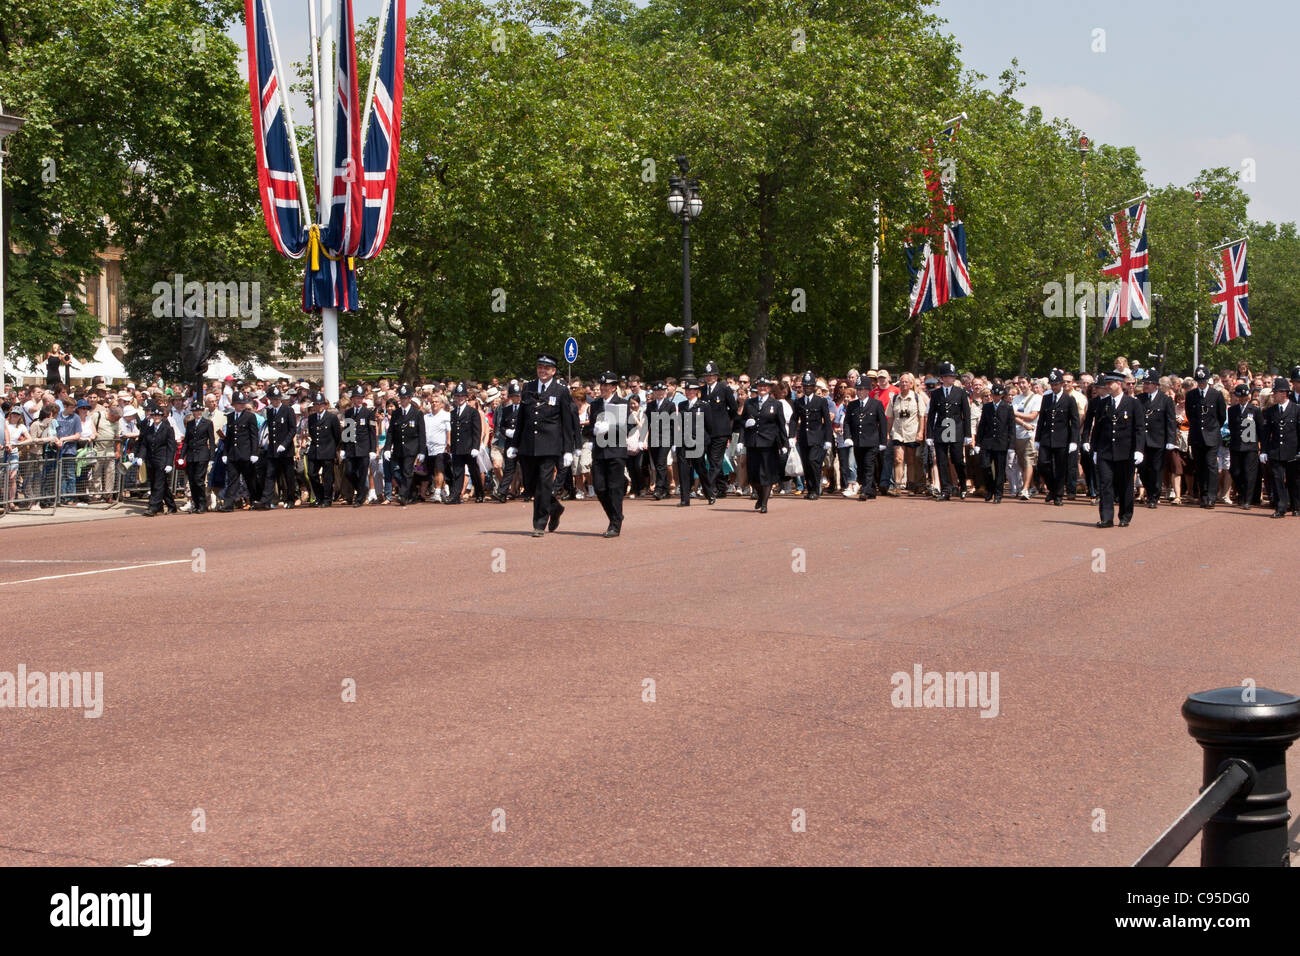 La police britannique menant la foule lors du défilé anniversaire célébration de Pall Mall à Buckingham Palace, Londres. Banque D'Images